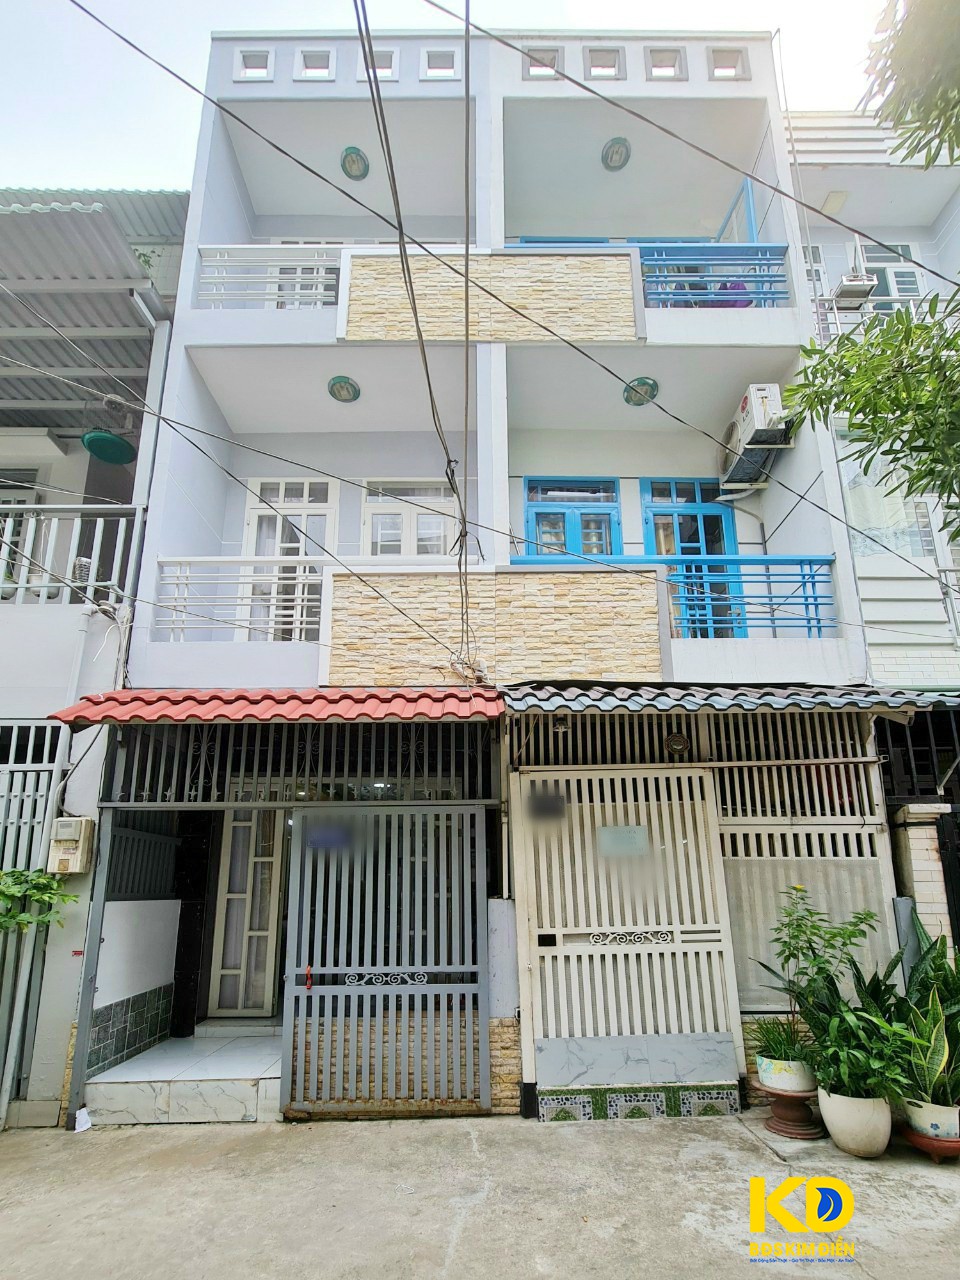 Bán nhà đồng sổ hữu hẻm 4m 2020 Huỳnh Tấn Phát thị trấn Nhà Bè